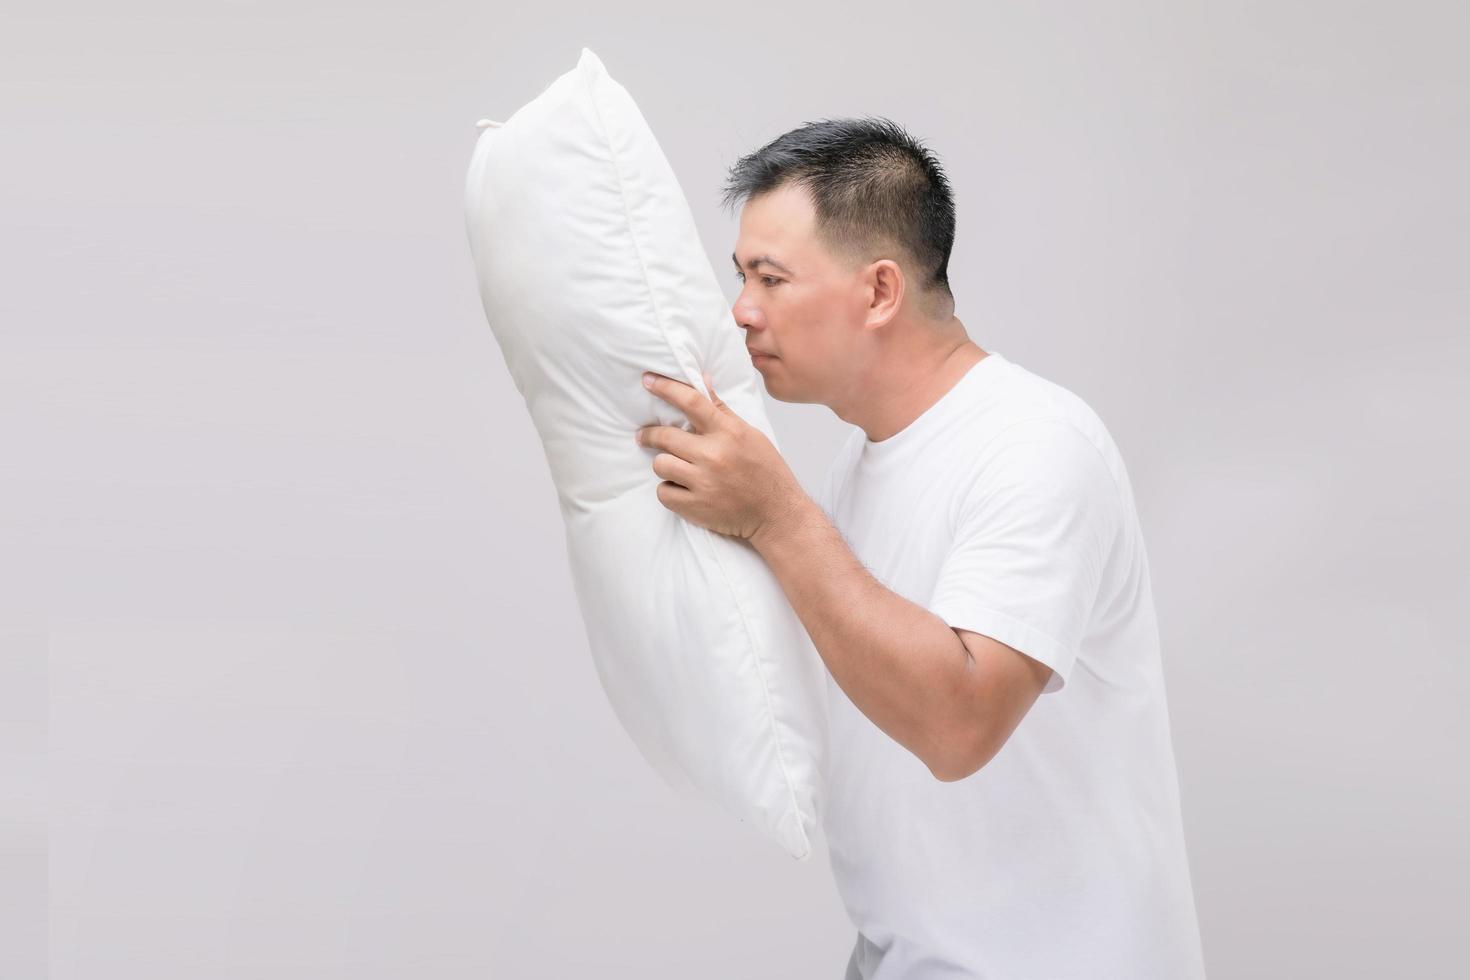 het kussen stinkt. portret aziatische man die wit kussen vasthoudt en een slechte geur krijgt. studio-opname op grijs foto